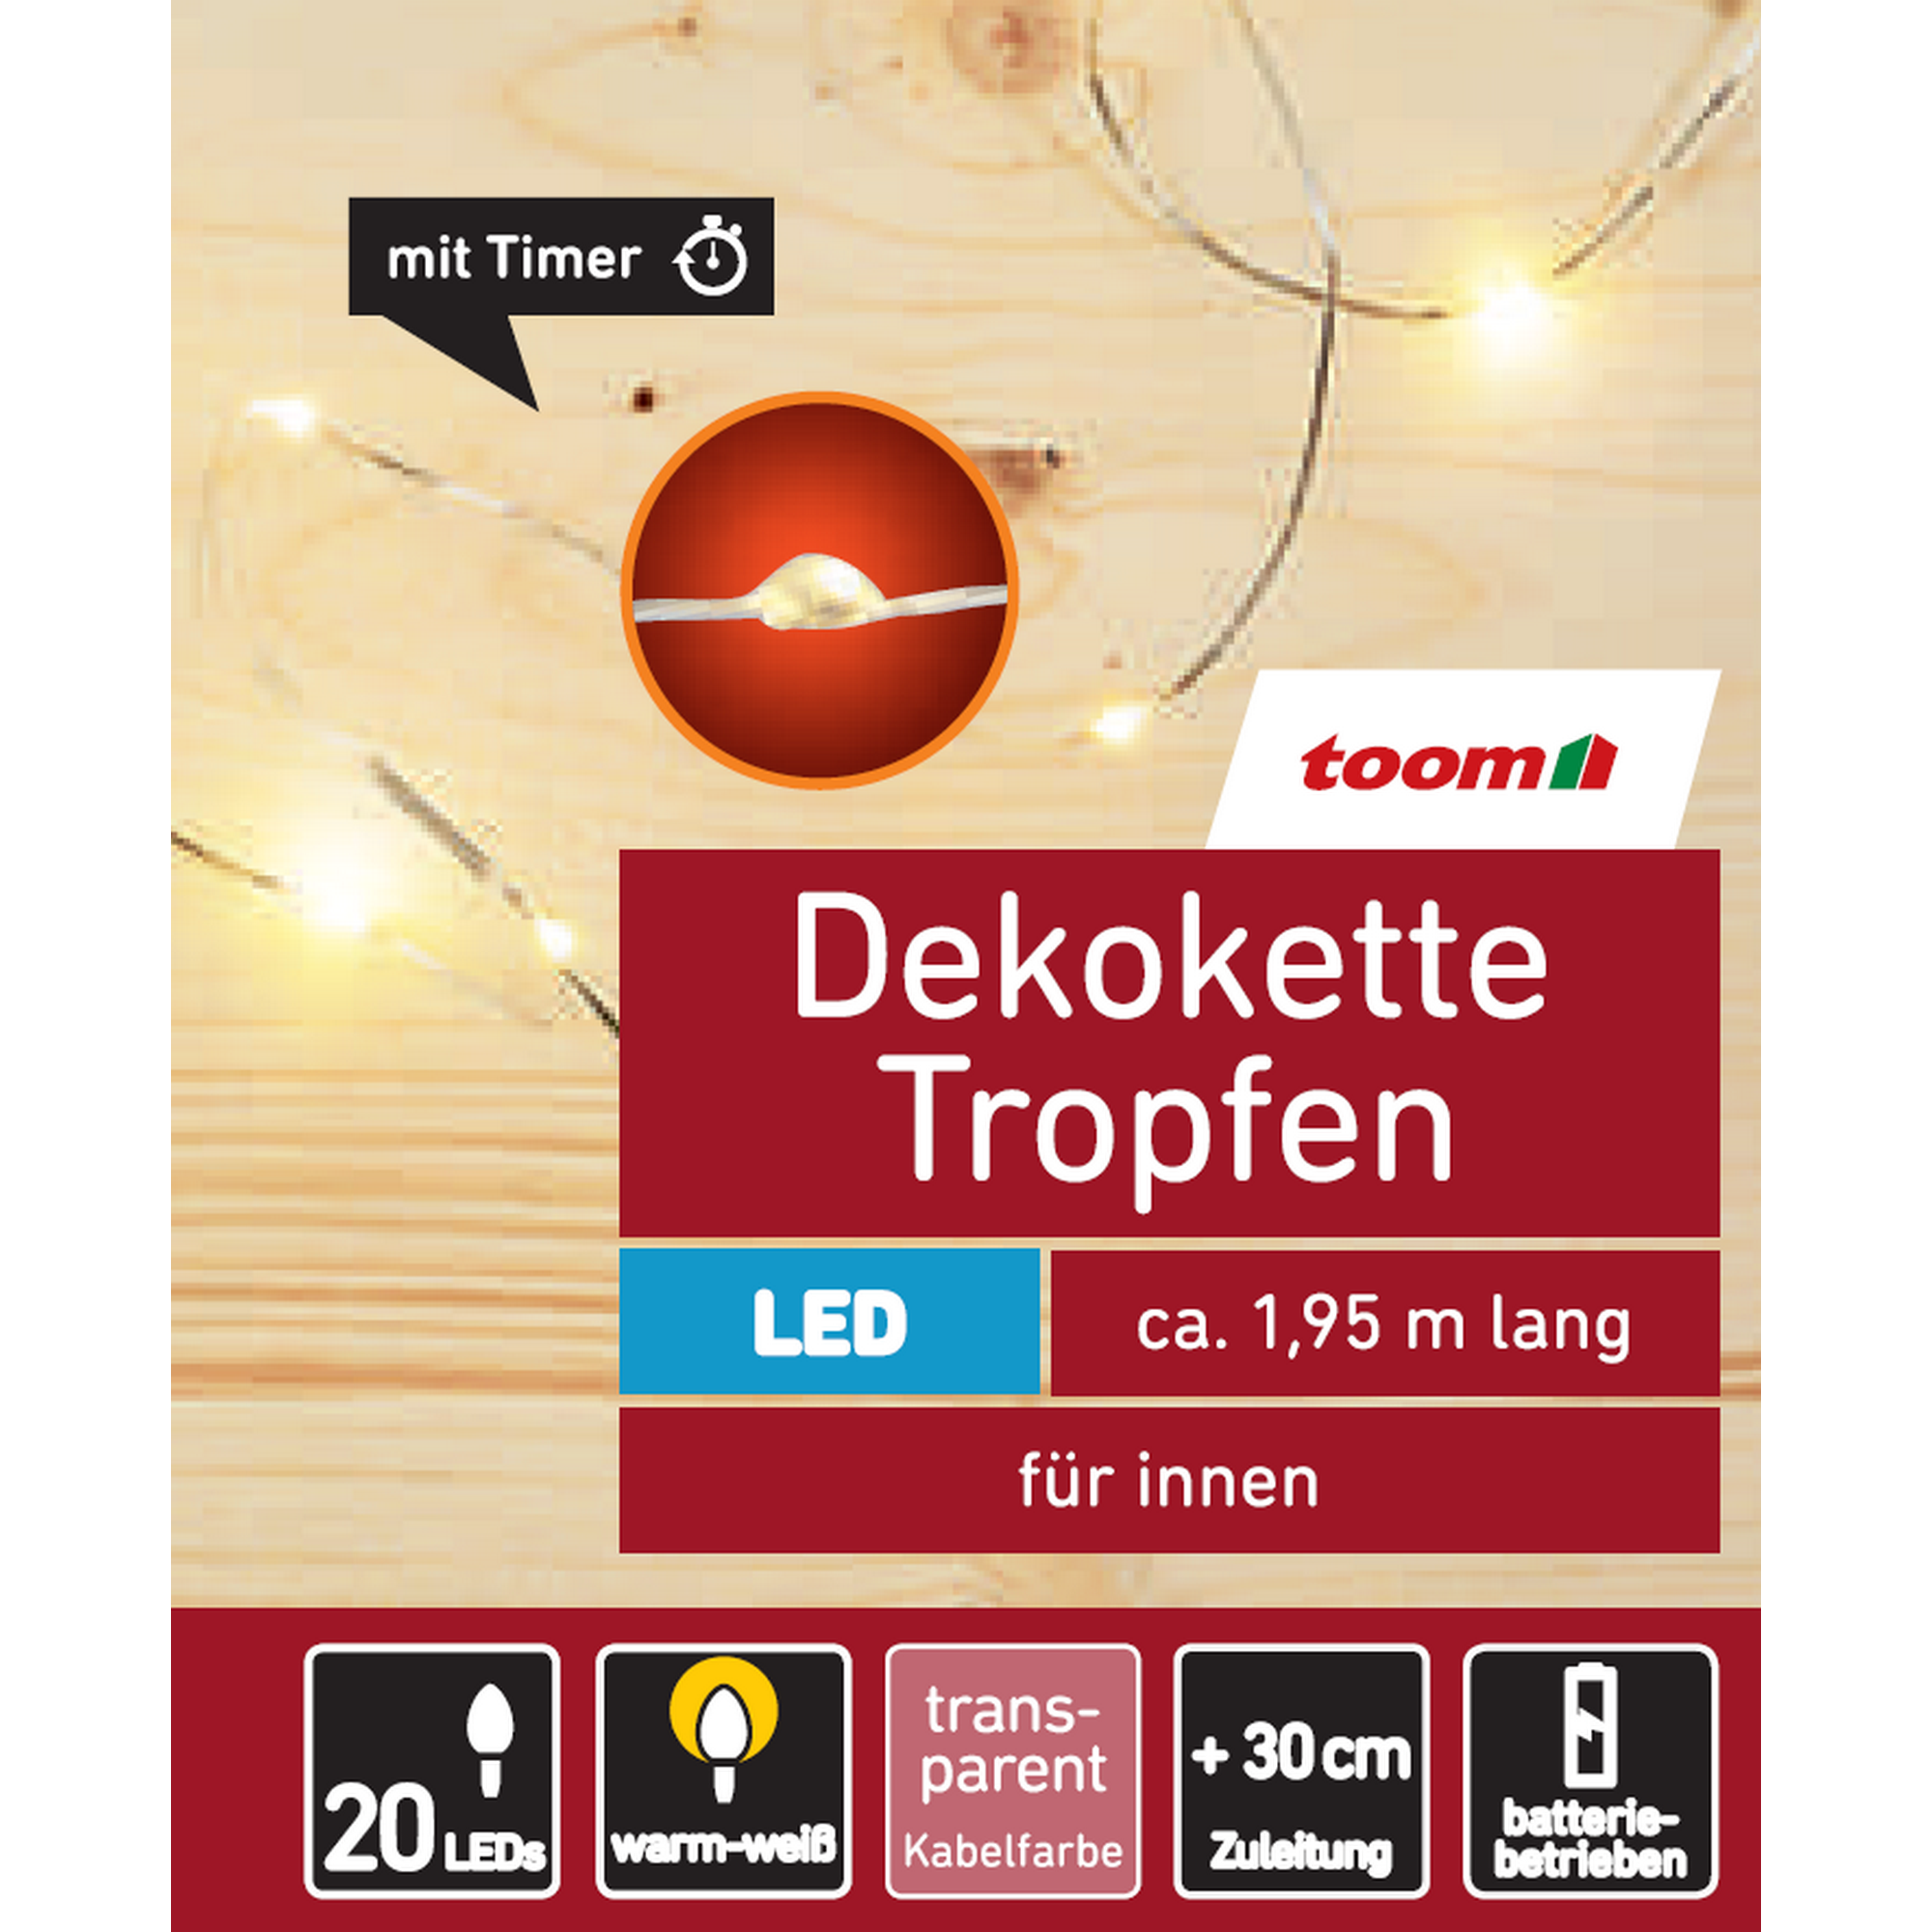 LED-Lichterkette 'Tropfen' 20 LEDs warmweiß 195 cm + product picture